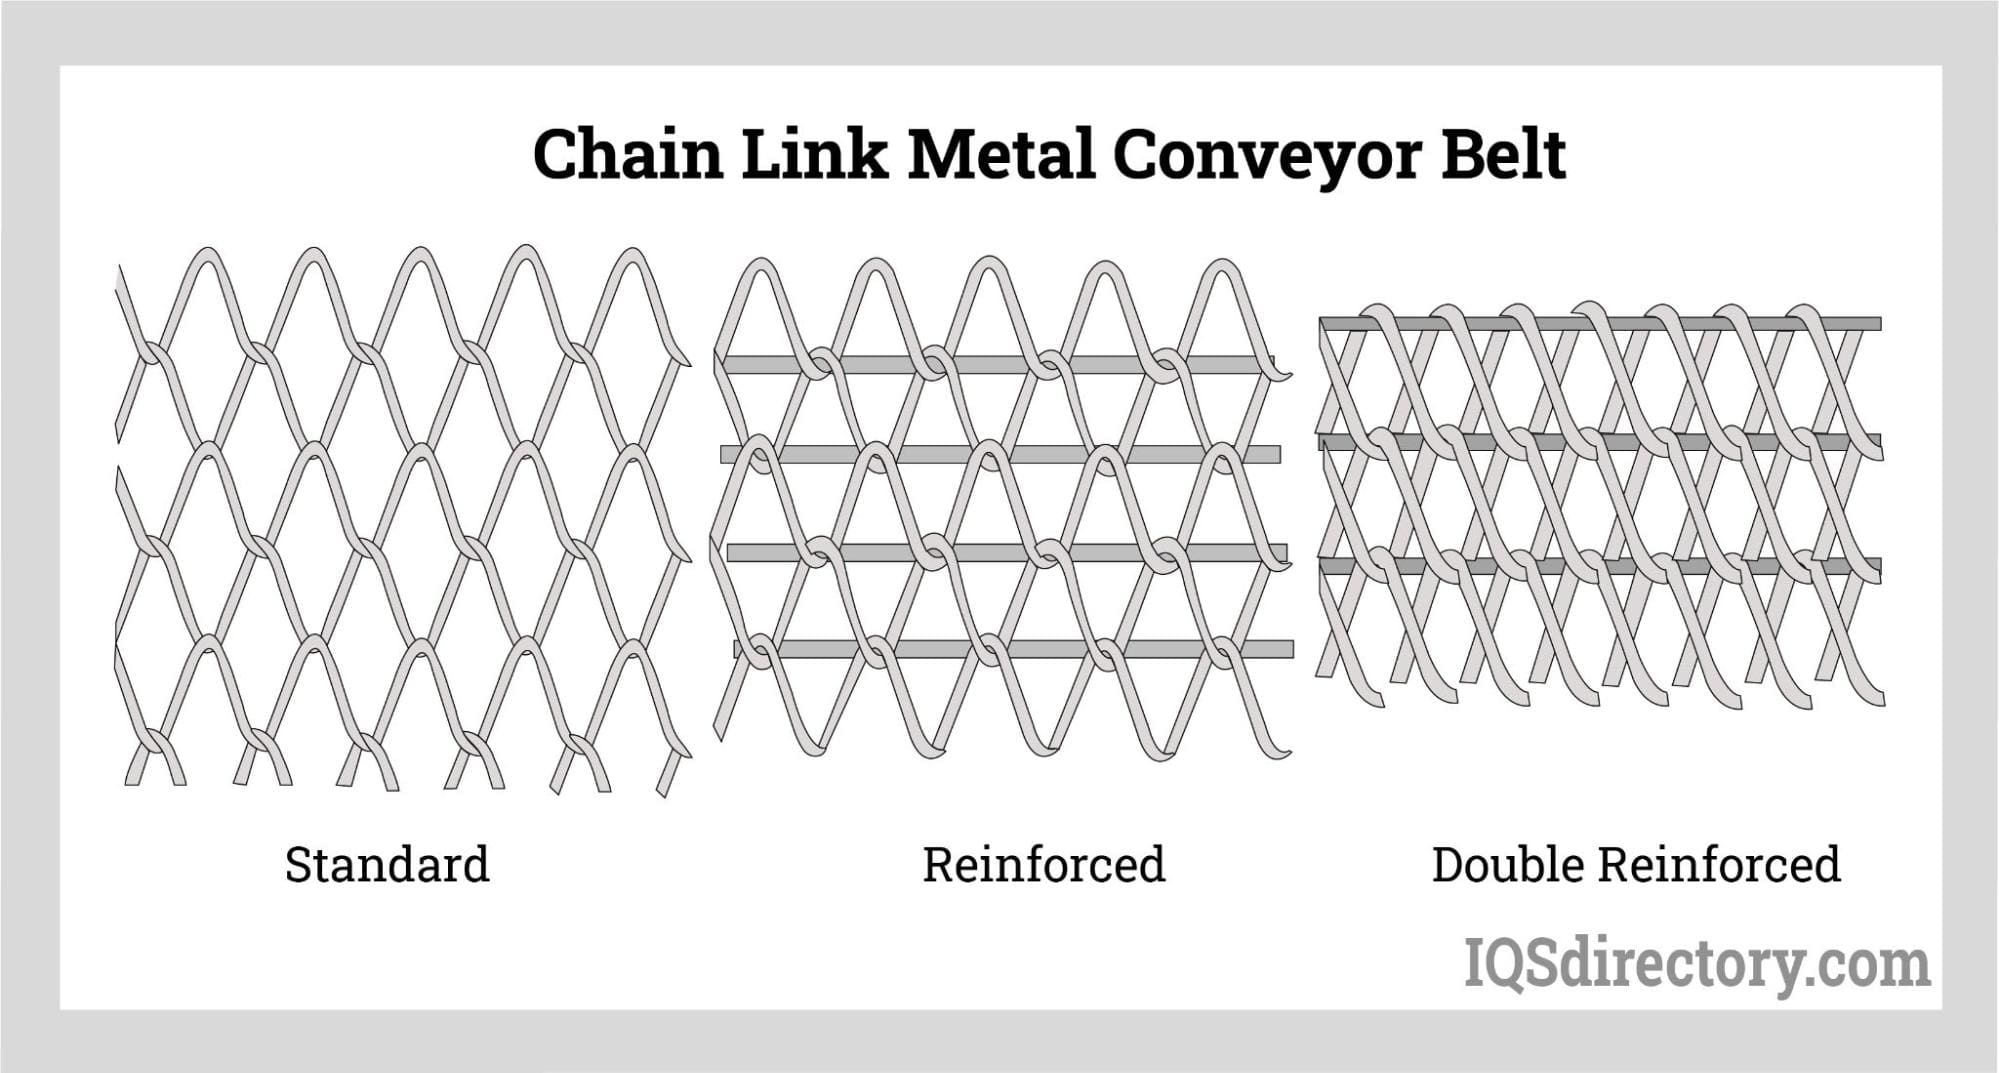 Chain Link Metal Conveyor Belt